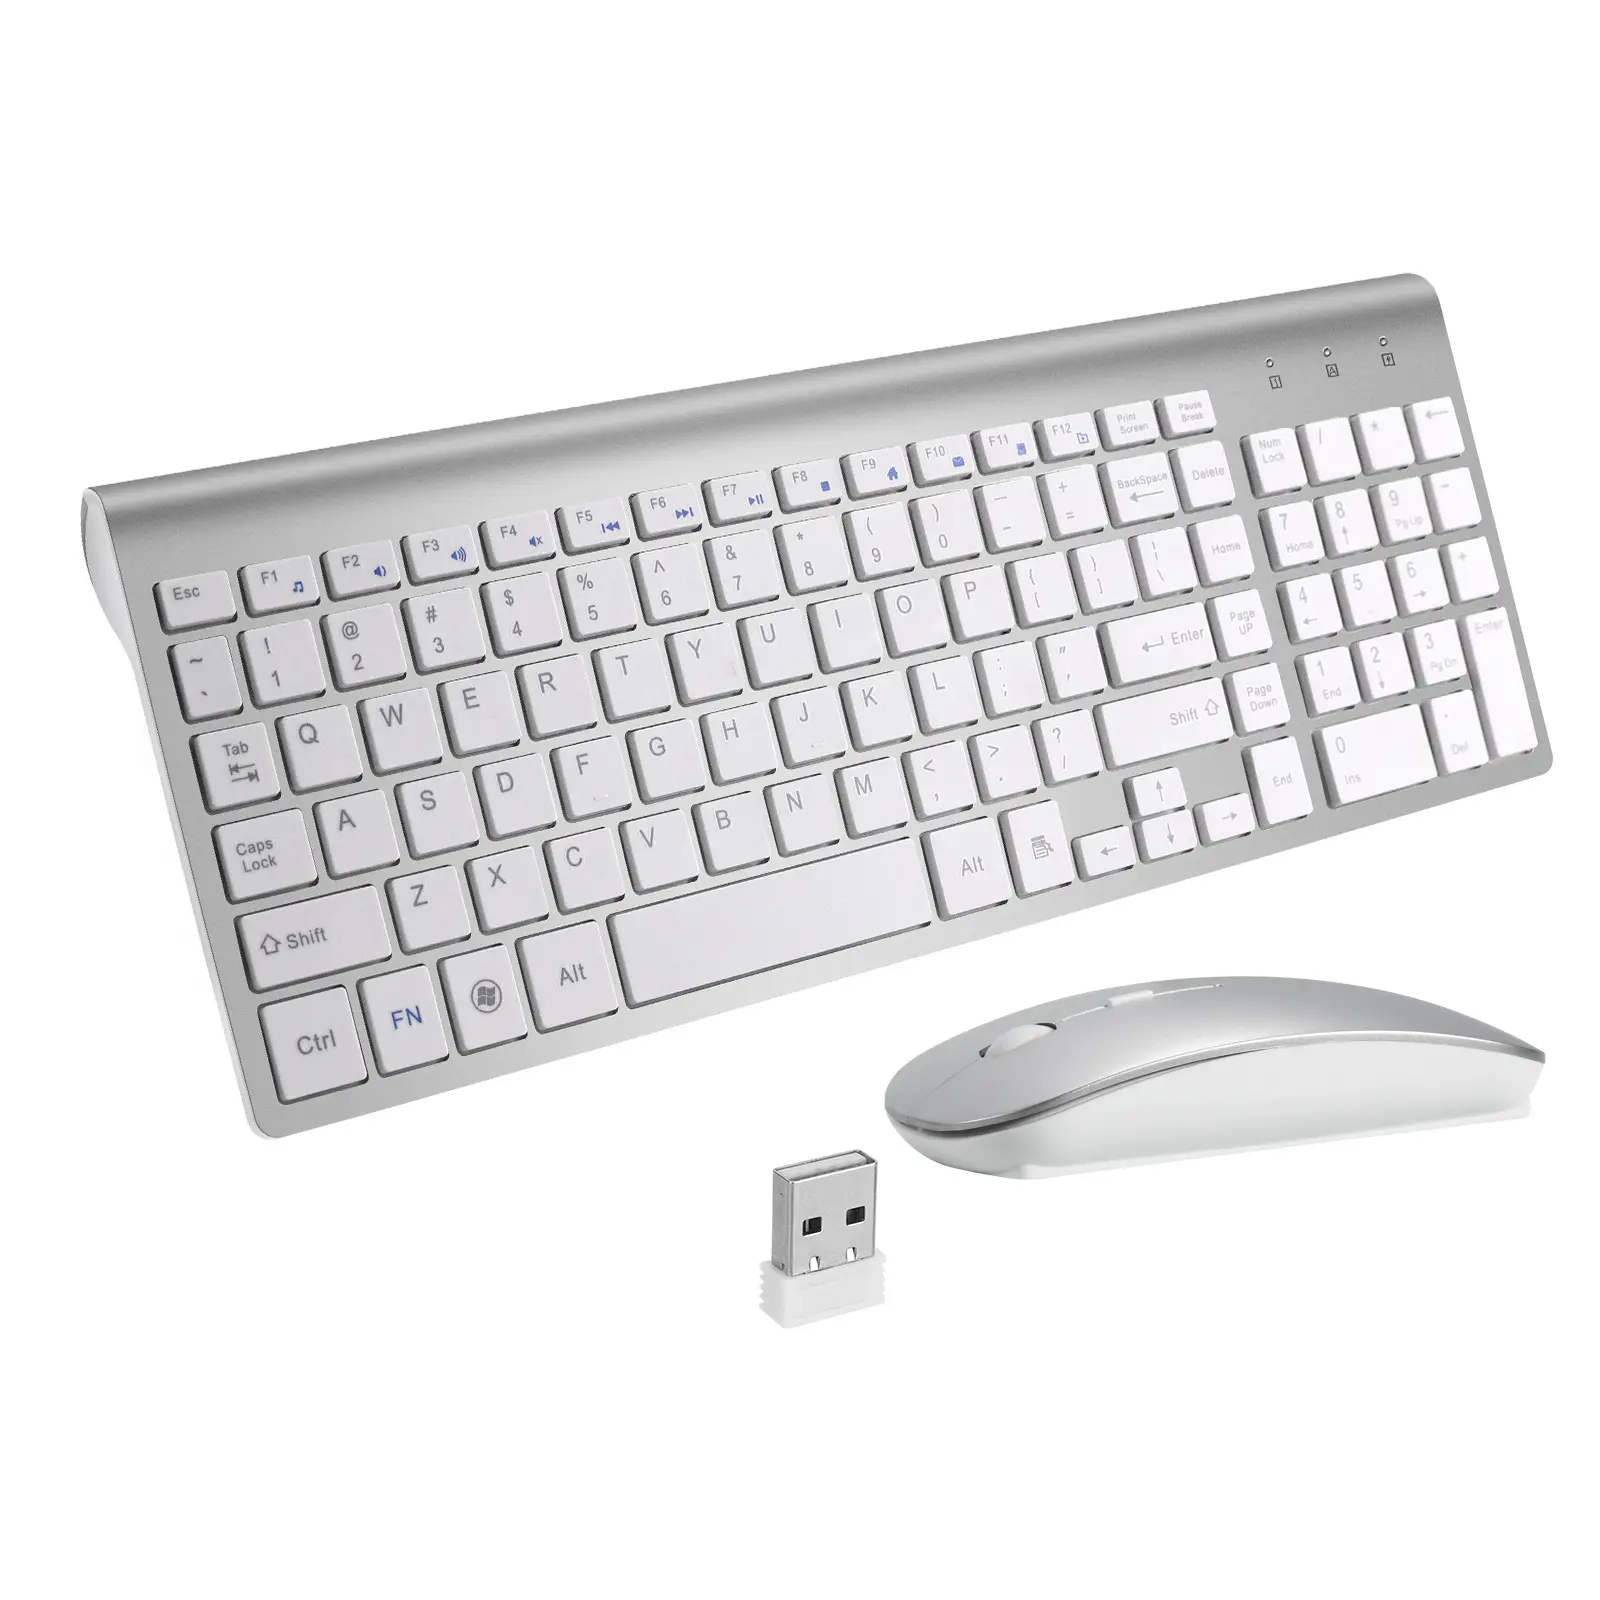 फैक्टरी मूल्य वायरलेस माउस और कीबोर्ड सेट एलईडी लाइट्स गेमिंग ऑफिस कंप्यूटर कंप्यूटर और लैपटॉप के लिए कीबोर्ड और माउस कॉम्बो